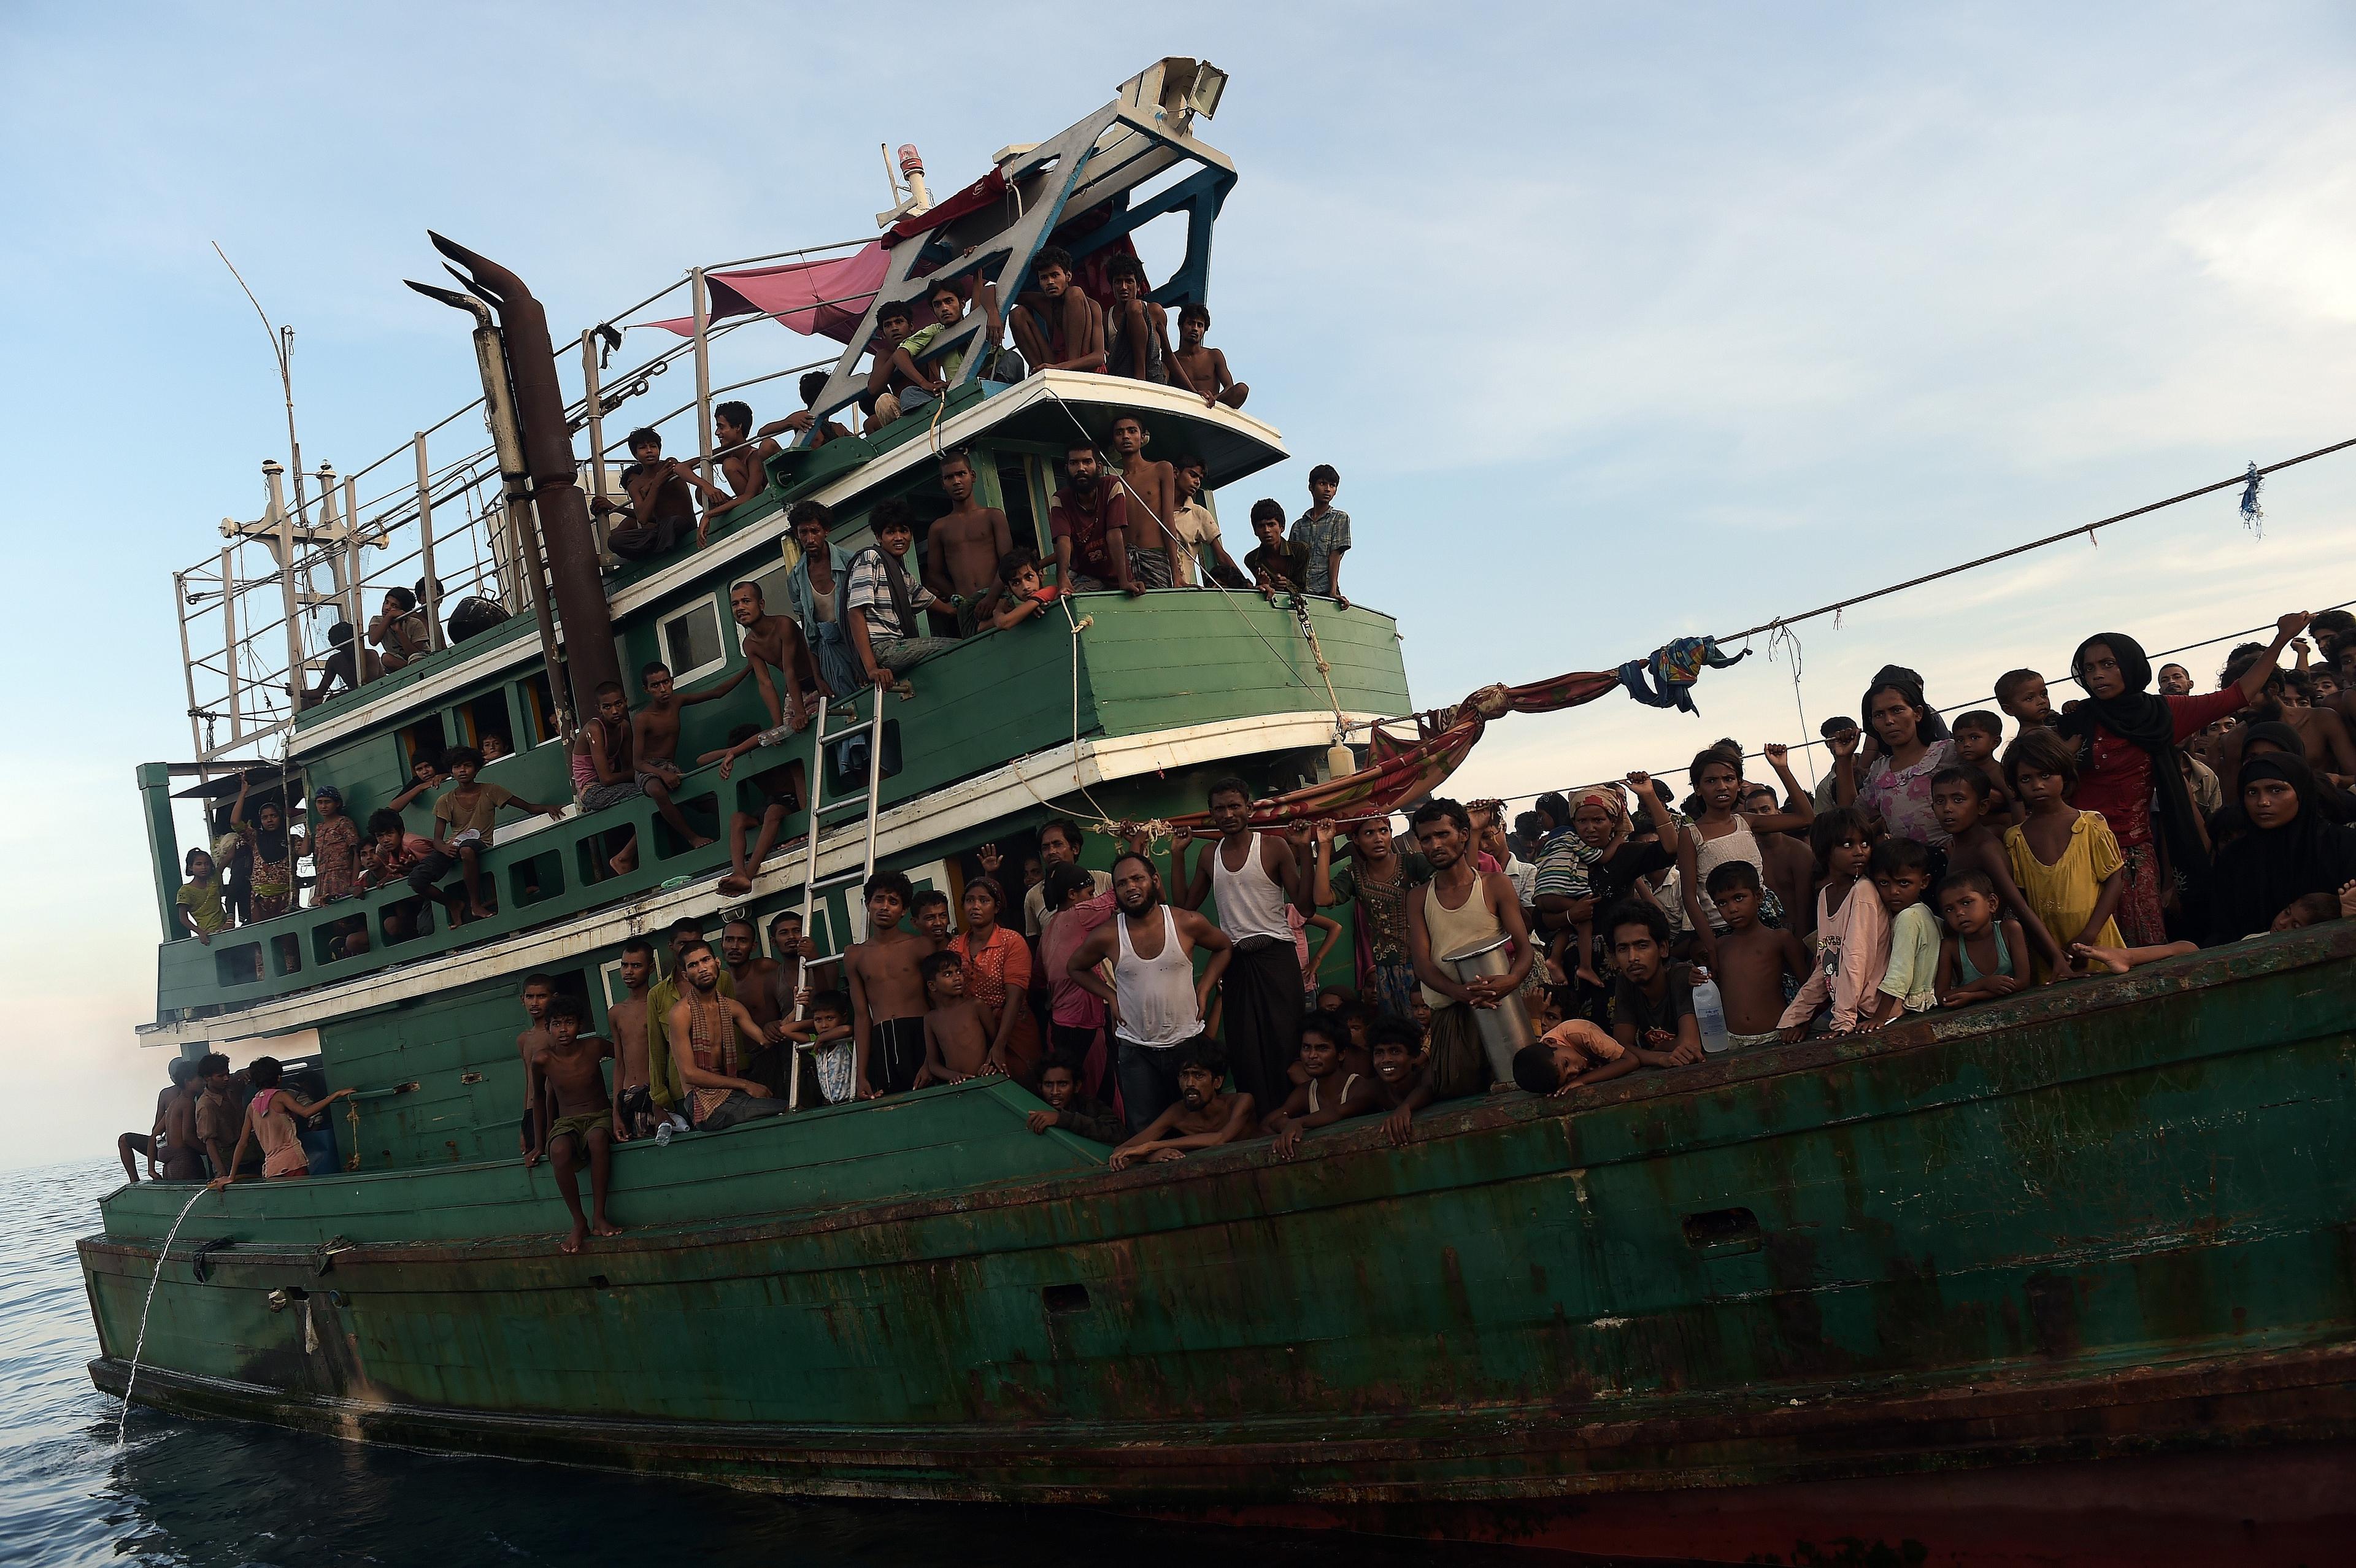 Överfulla båtar med rohingyaflyktingar drev omkring utanför Thailands kust i flera veckor i maj 2015 sedan myndigheterna slagit till mot människosmugglare. Mat släpptes ner i havet av en thailändsk militärhelikopter. (Foto: Christophe Archambault /AFP/Getty Image)